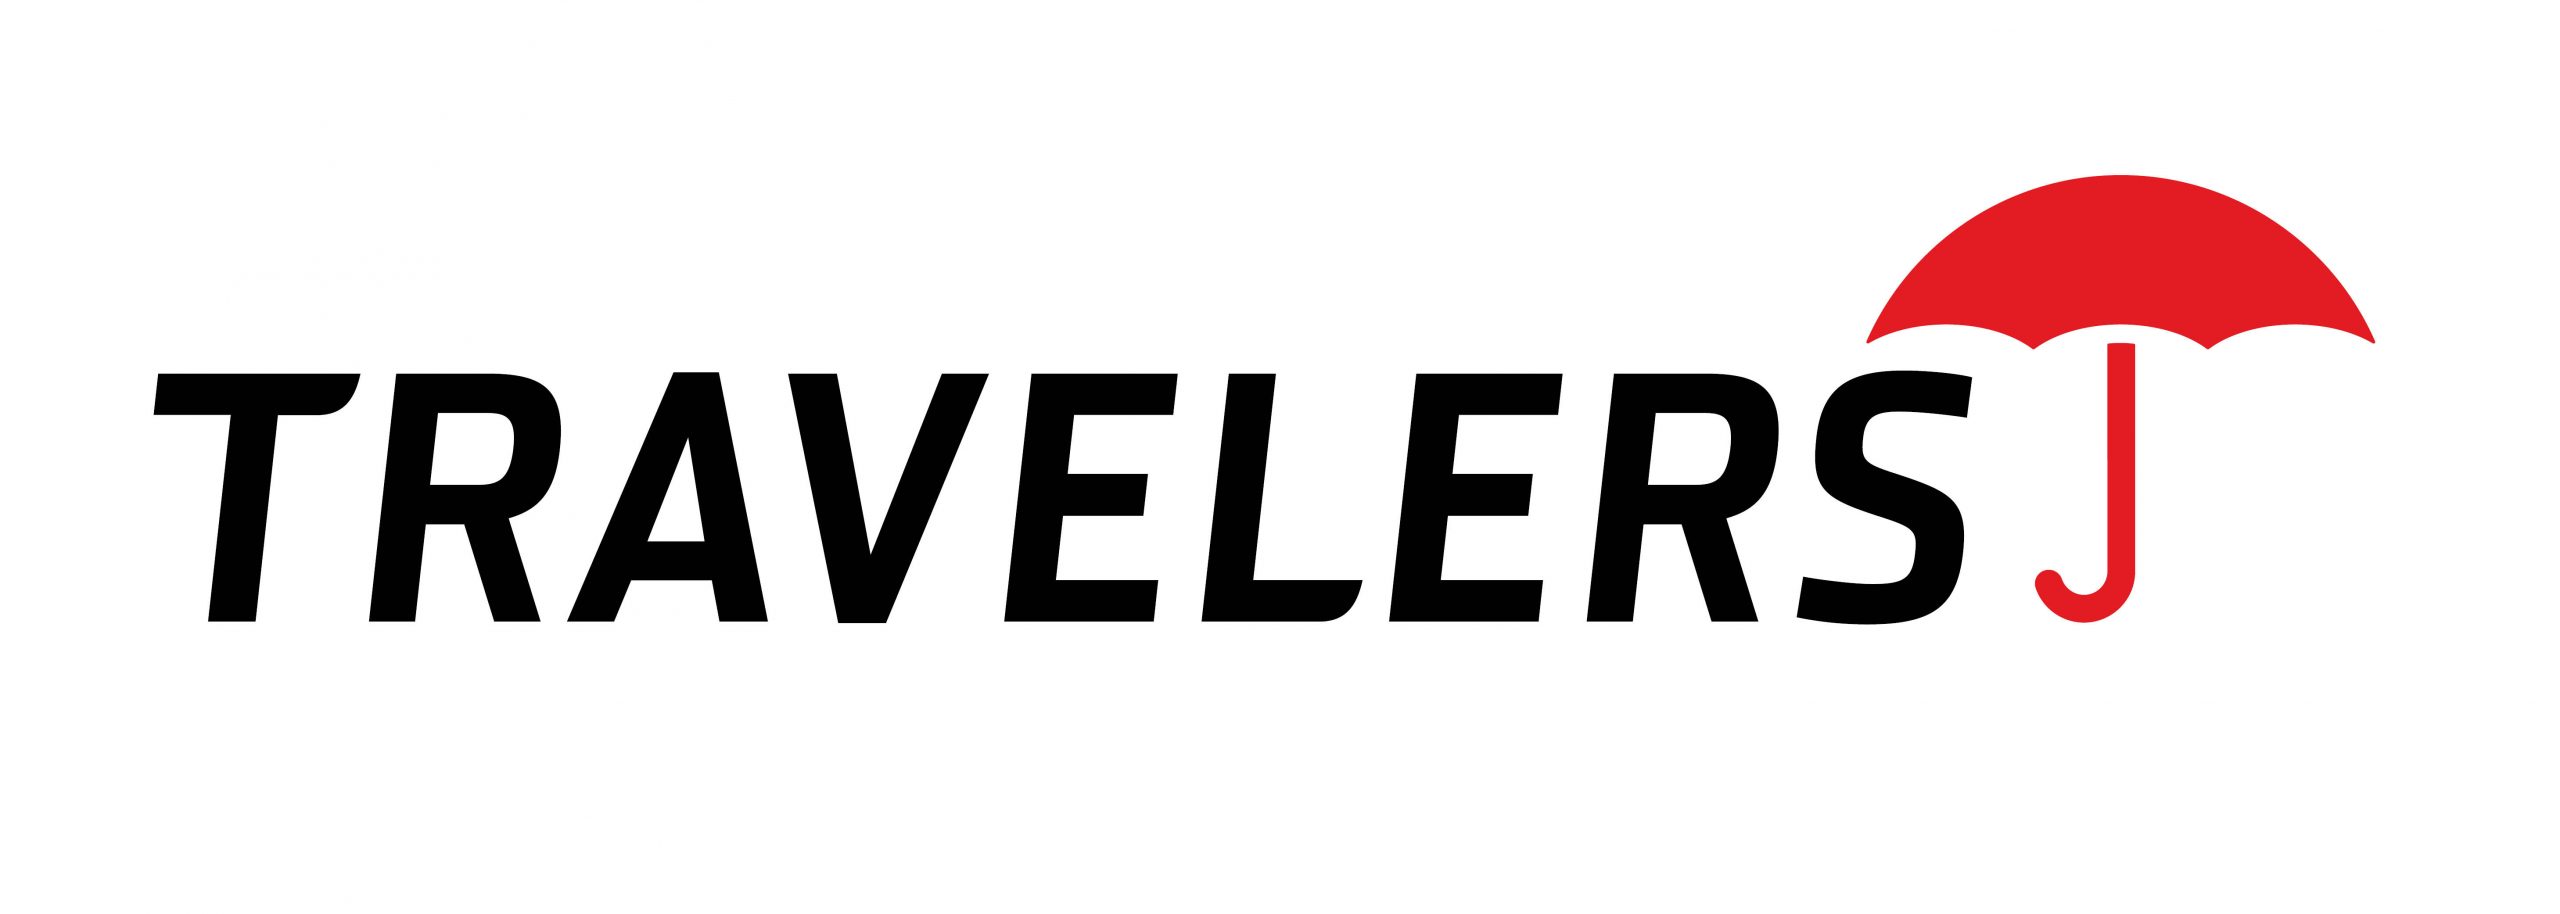 Travelers2014